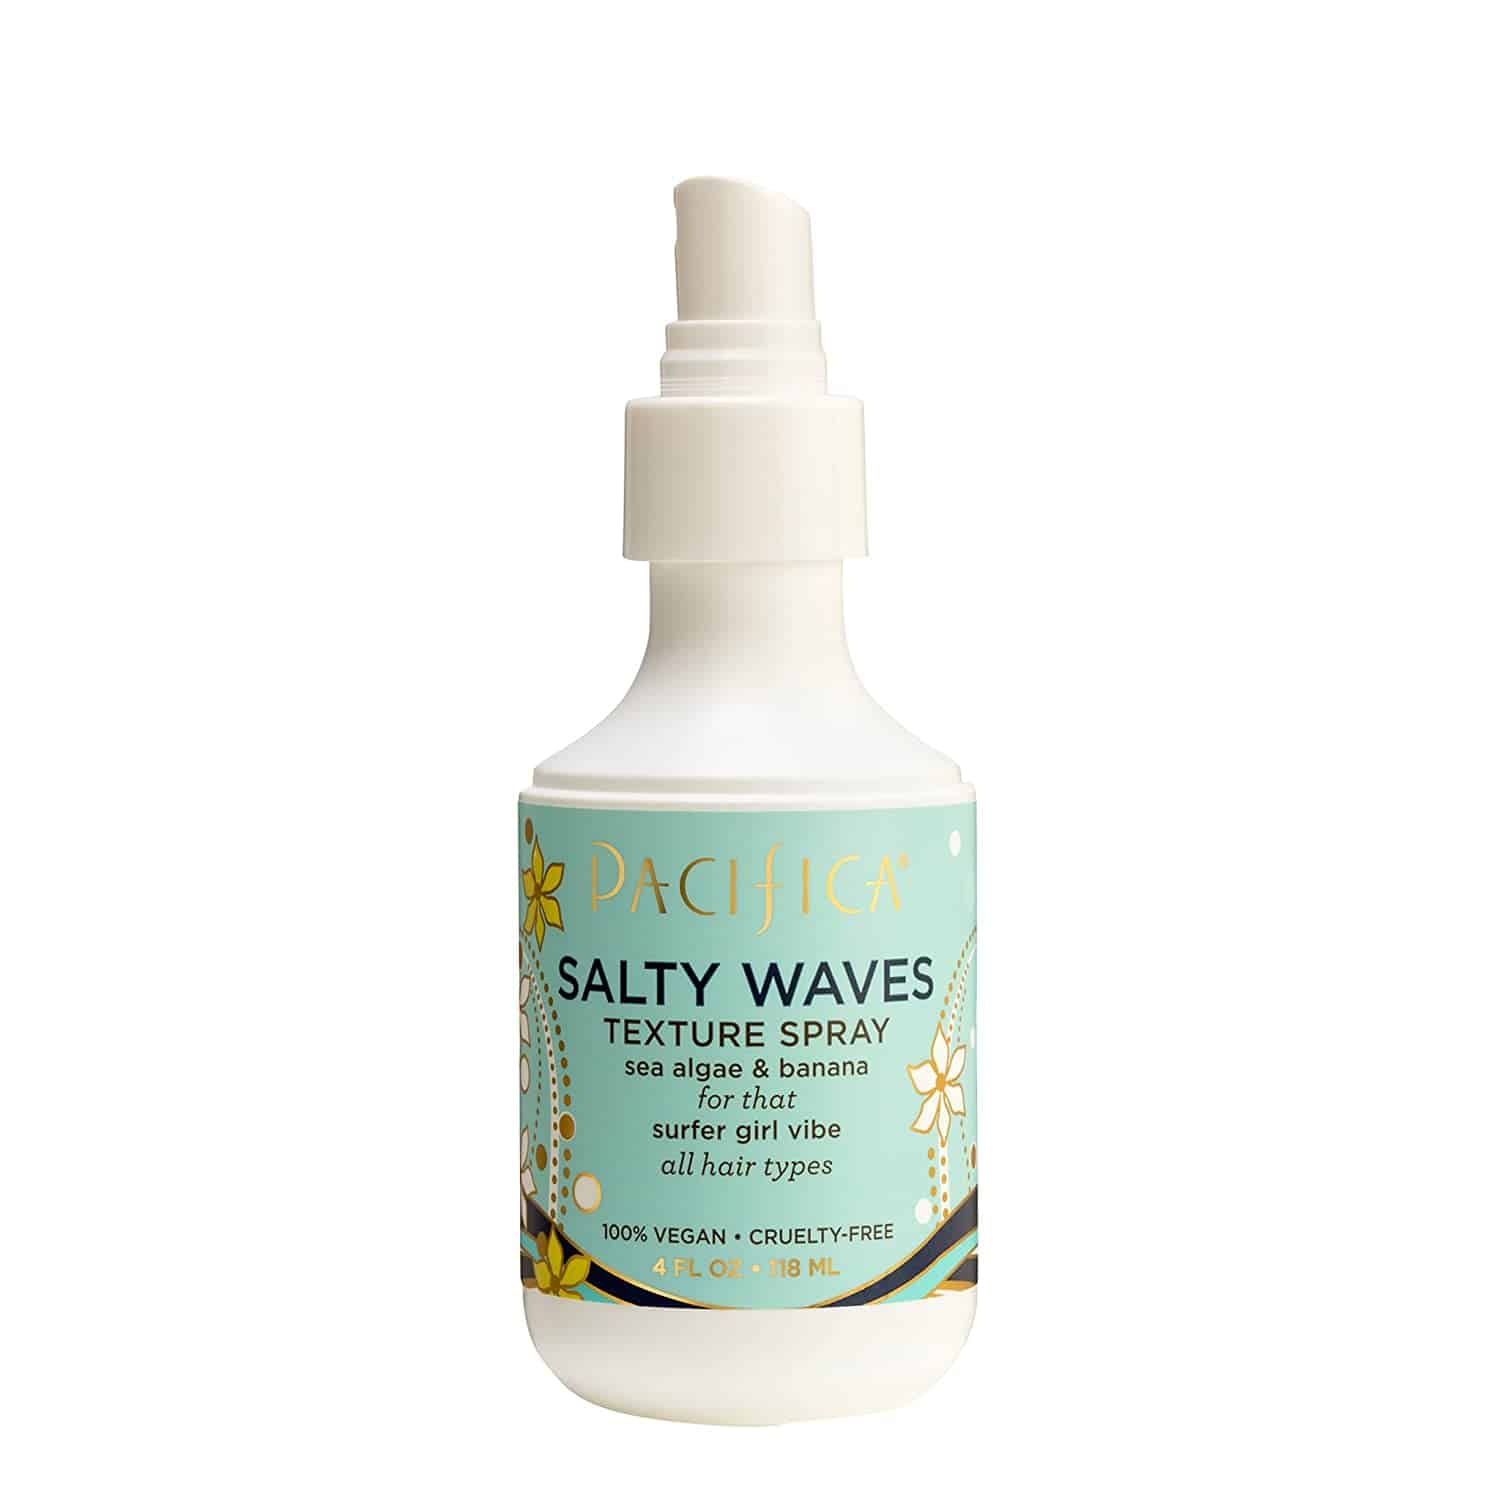 Pacifica Beauty Salty Waves Texture Spray, 4 Fluid Ounce